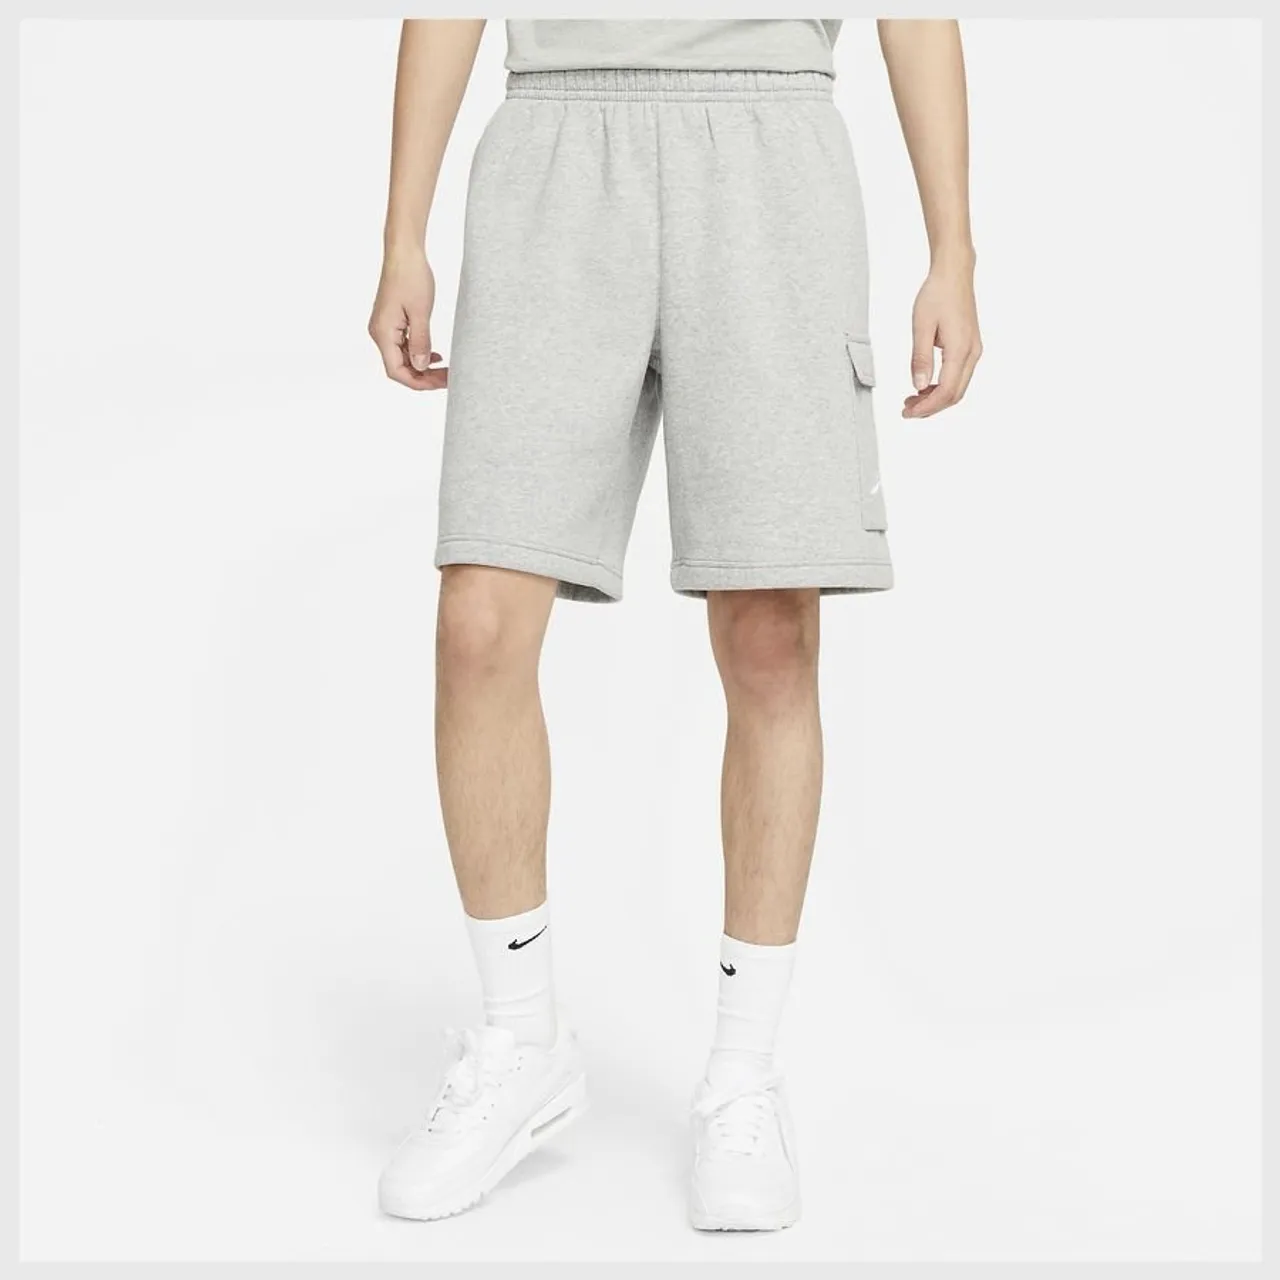 Nike Shorts NSW Club Cargo - Grau/Silber/Weiß